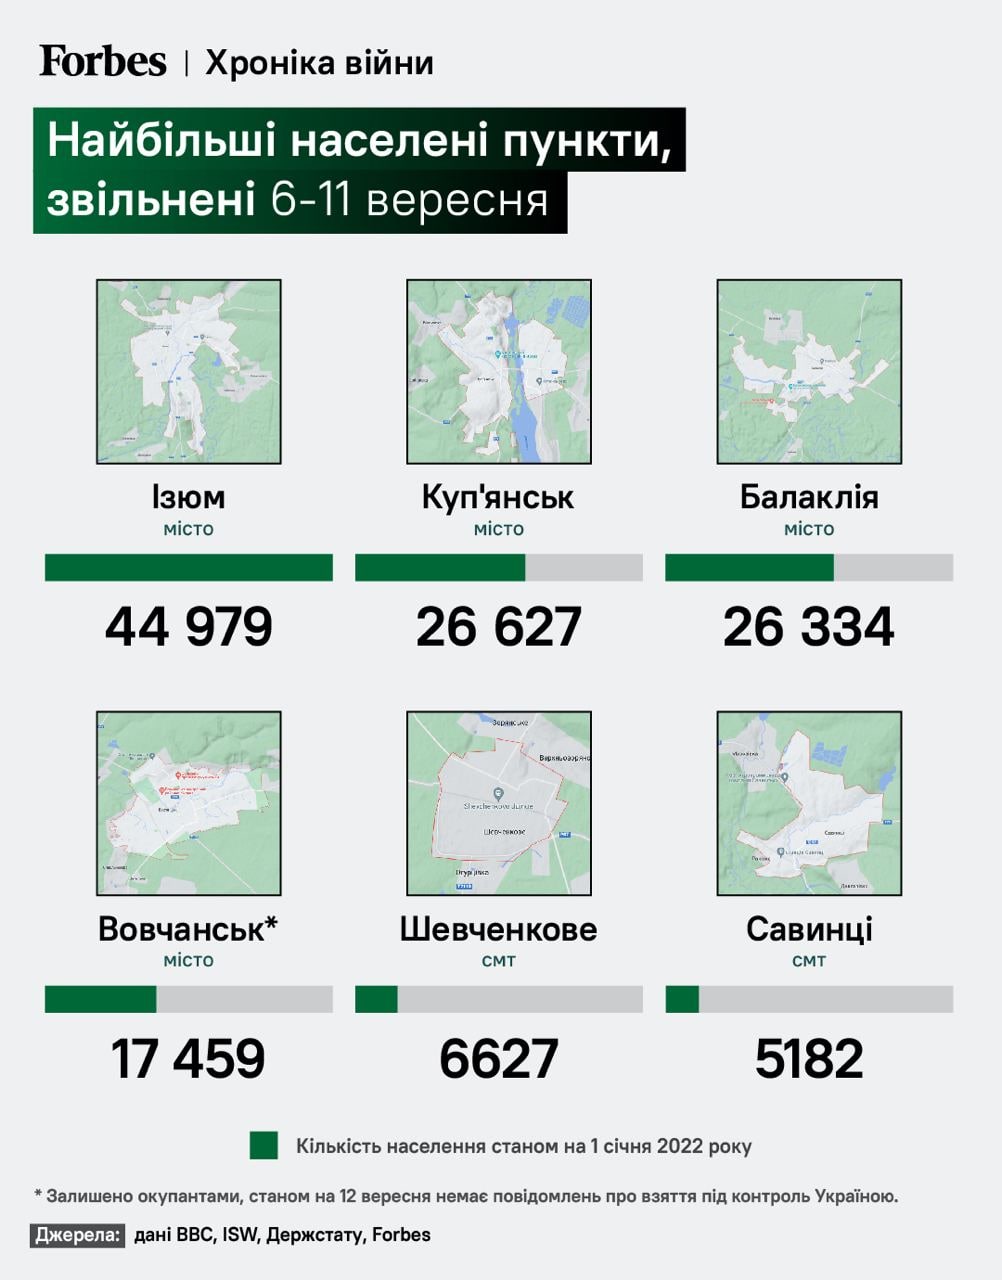 Інфографіка Forbes: найбільші населені пункти, які звільнили ЗСУ протягом 6-11 вересня